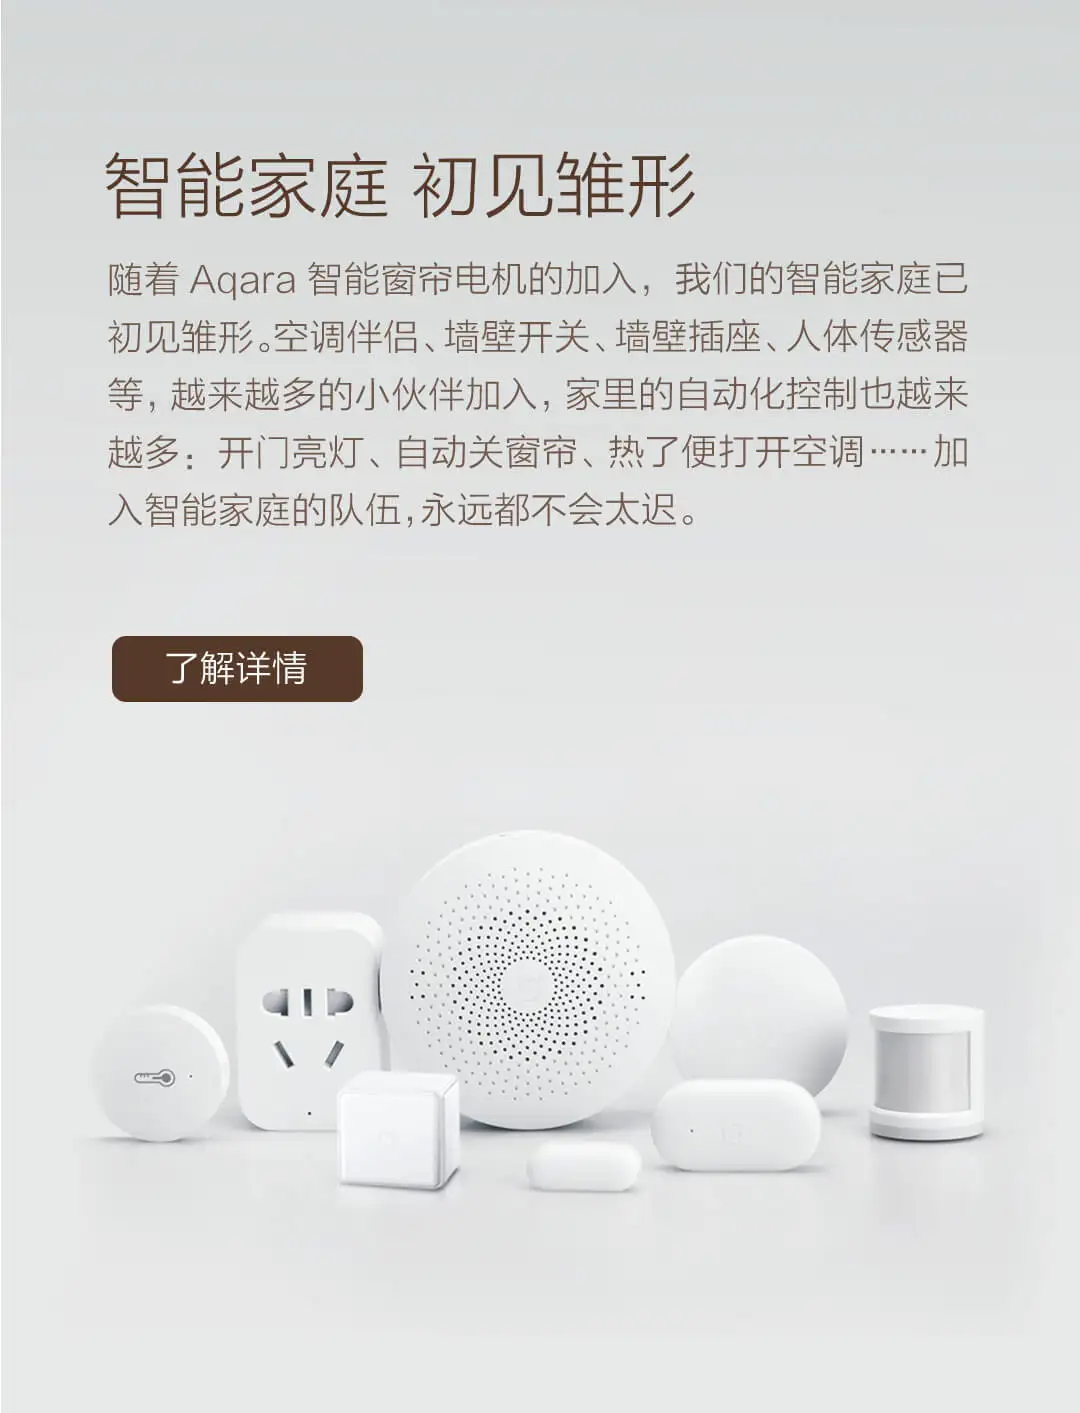 Xiaomi Aqara умный занавес Мотор Интеллектуальный Zigbee Wifi для xiaomi умный дом устройство беспроводной пульт дистанционного управления через приложение mi Home